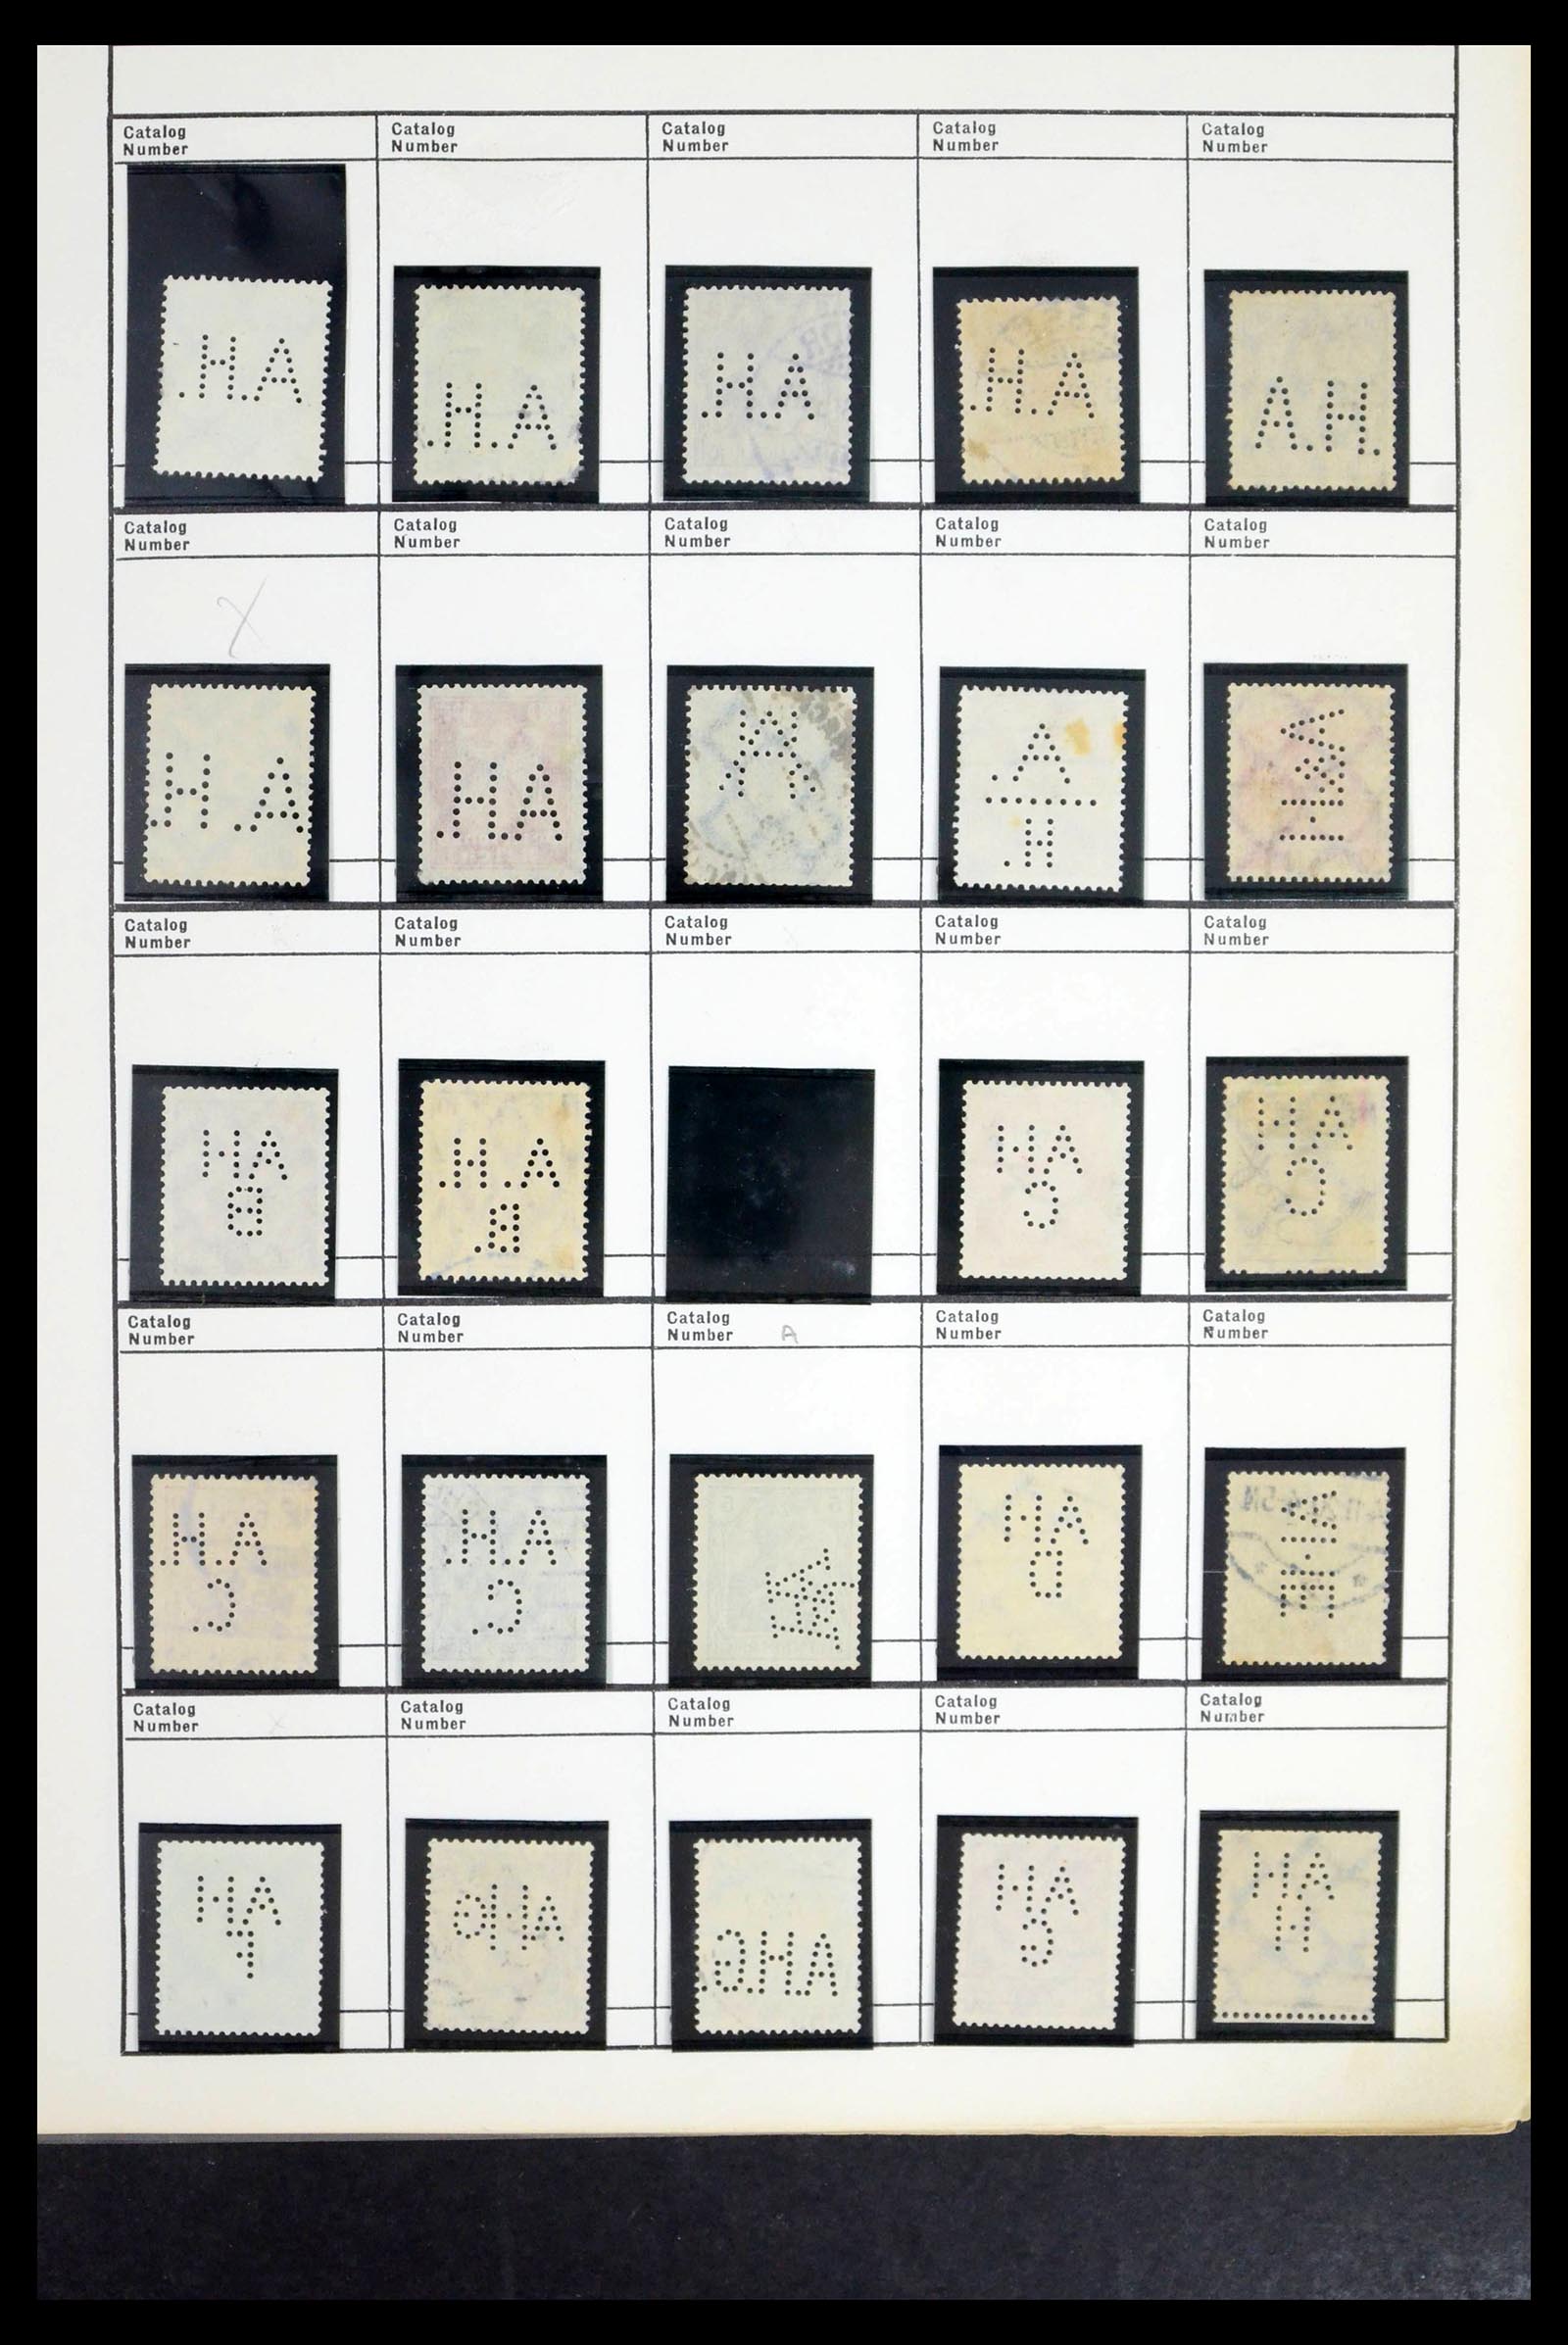 39480 0021 - Stamp collection 39480 German Reich perfins 1880-1955.